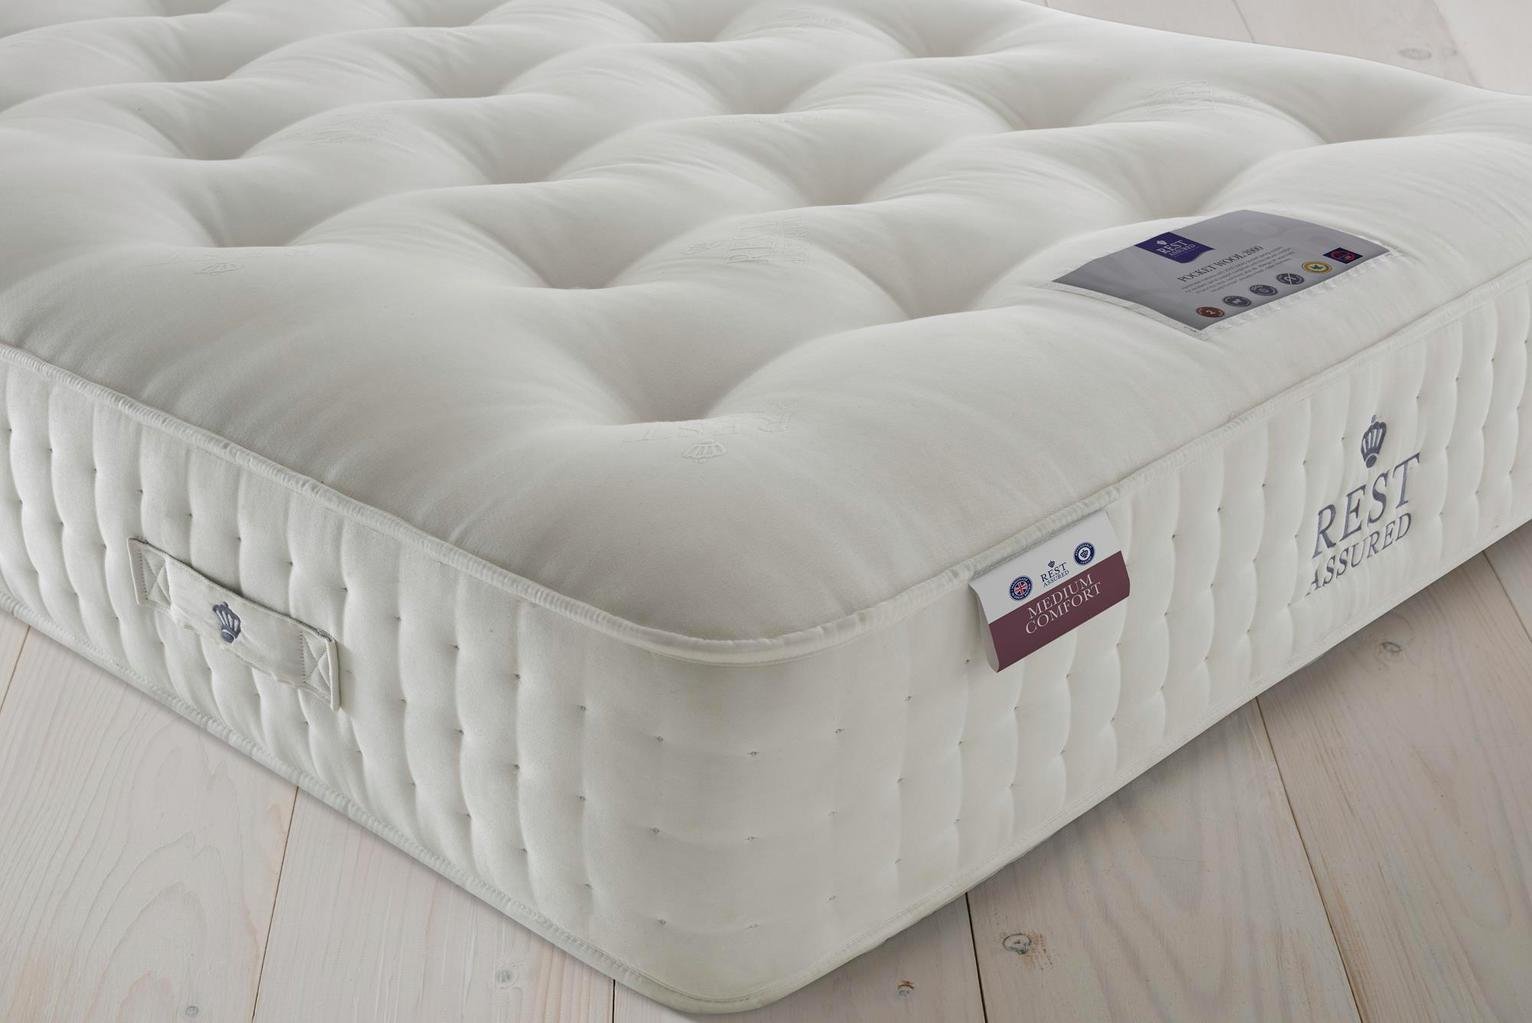 rest assured latex mattress review